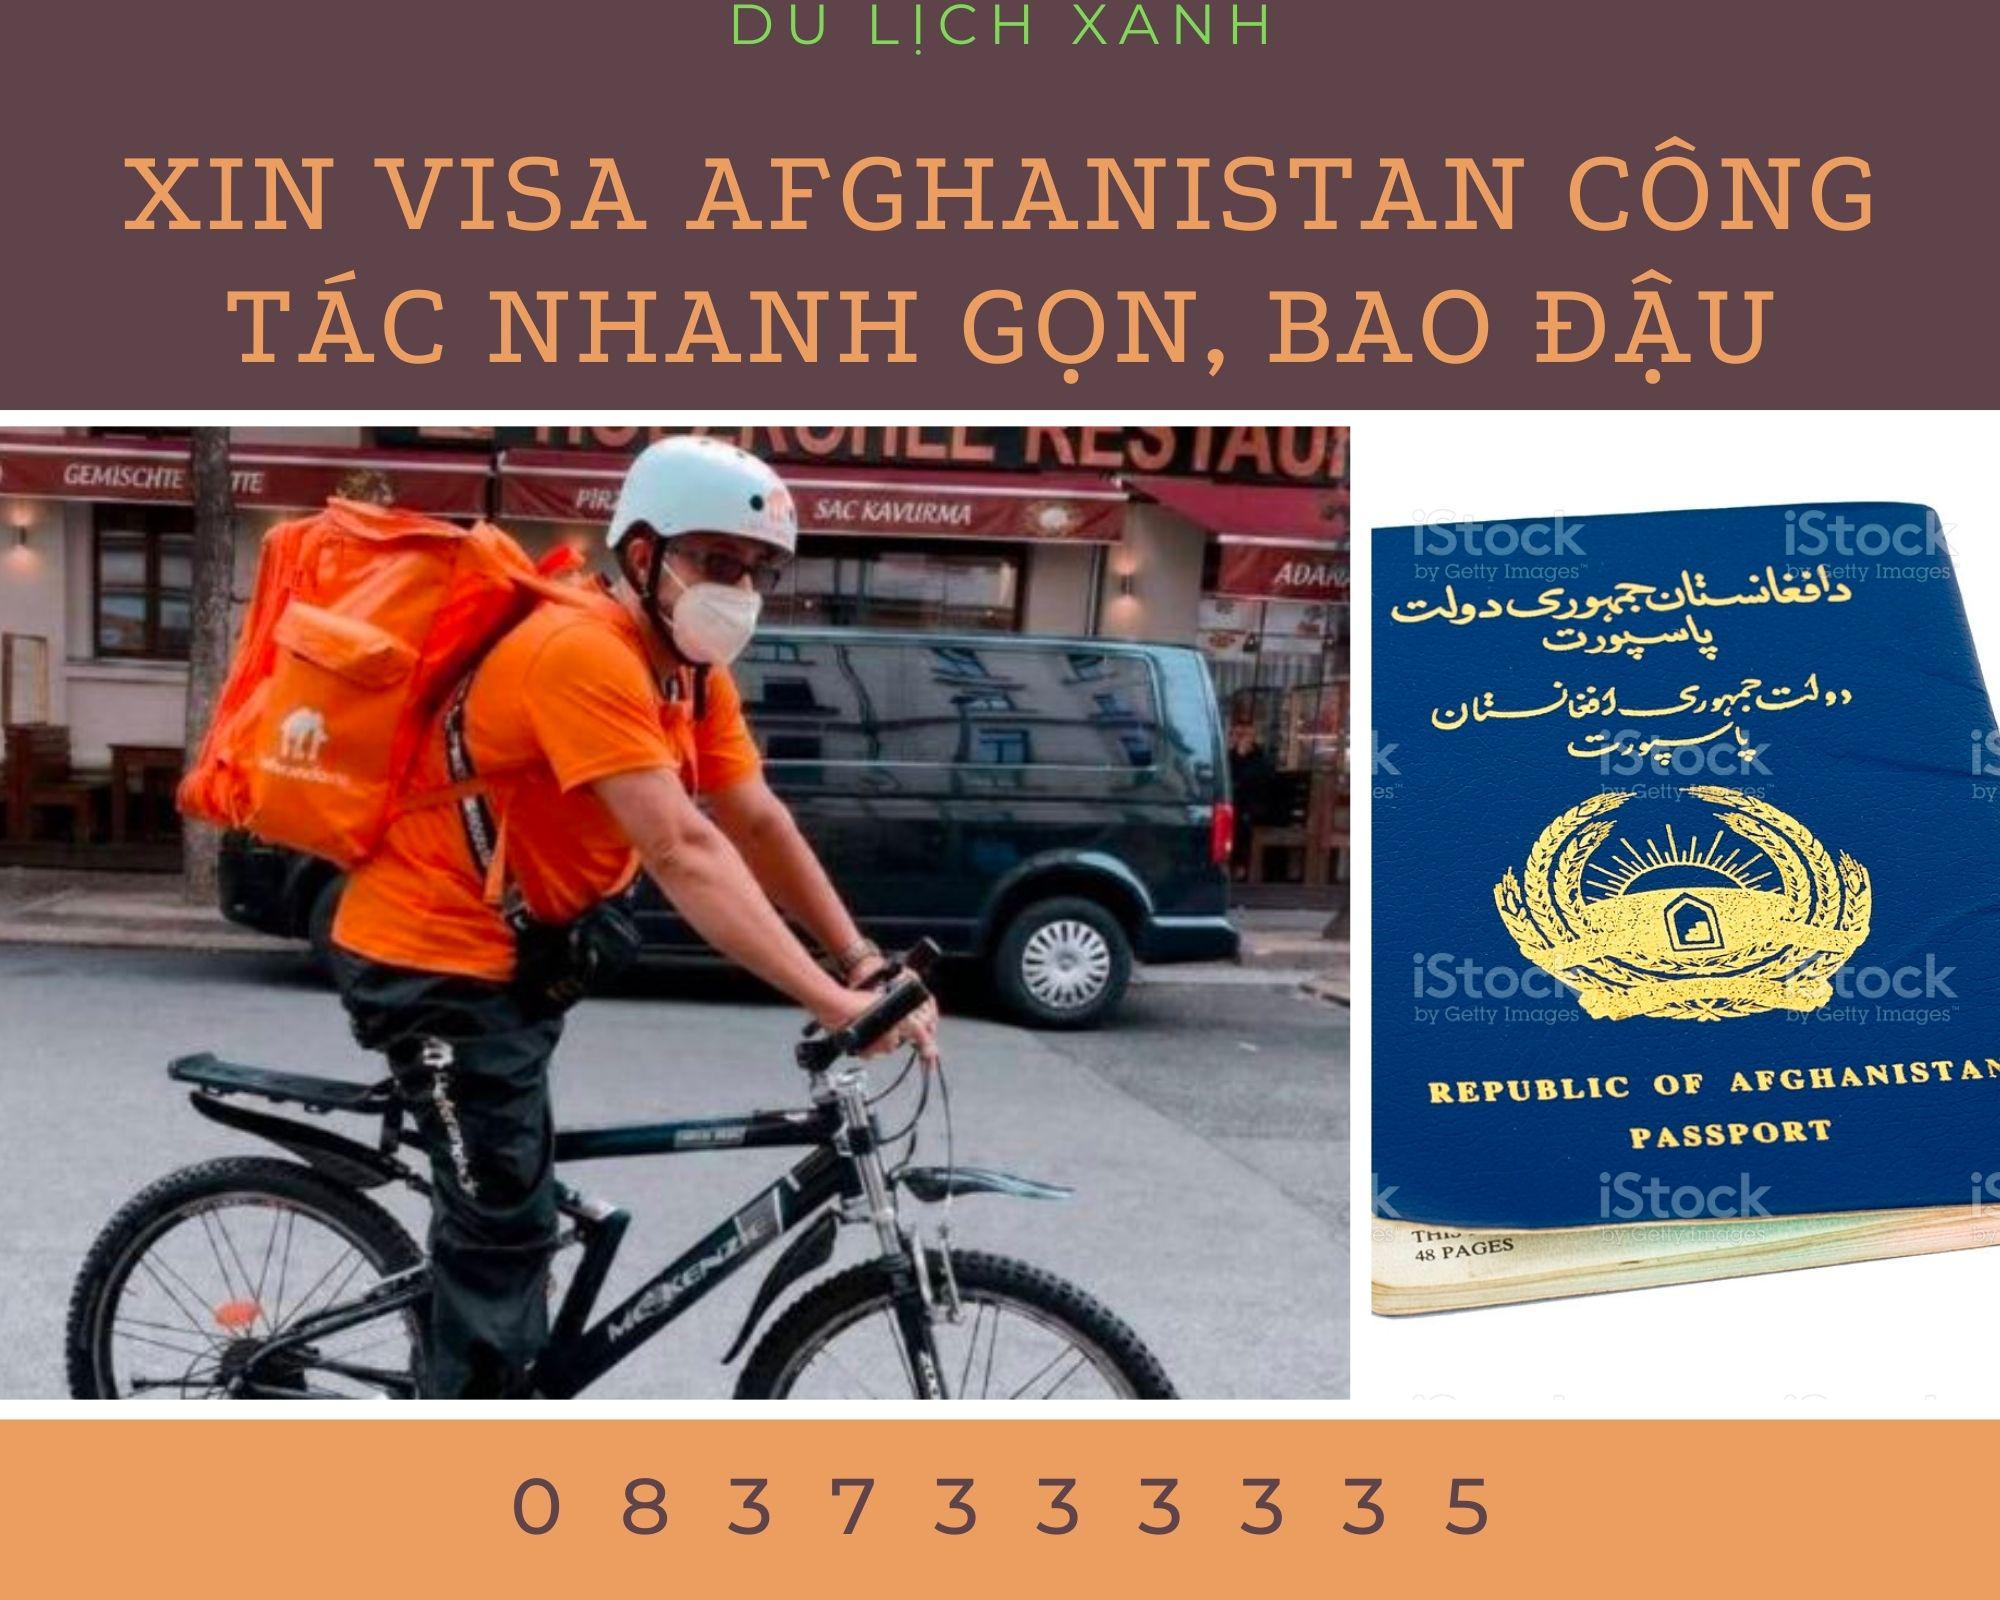 Xin Visa Afghanistan công tác nhanh gọn, bao đậu